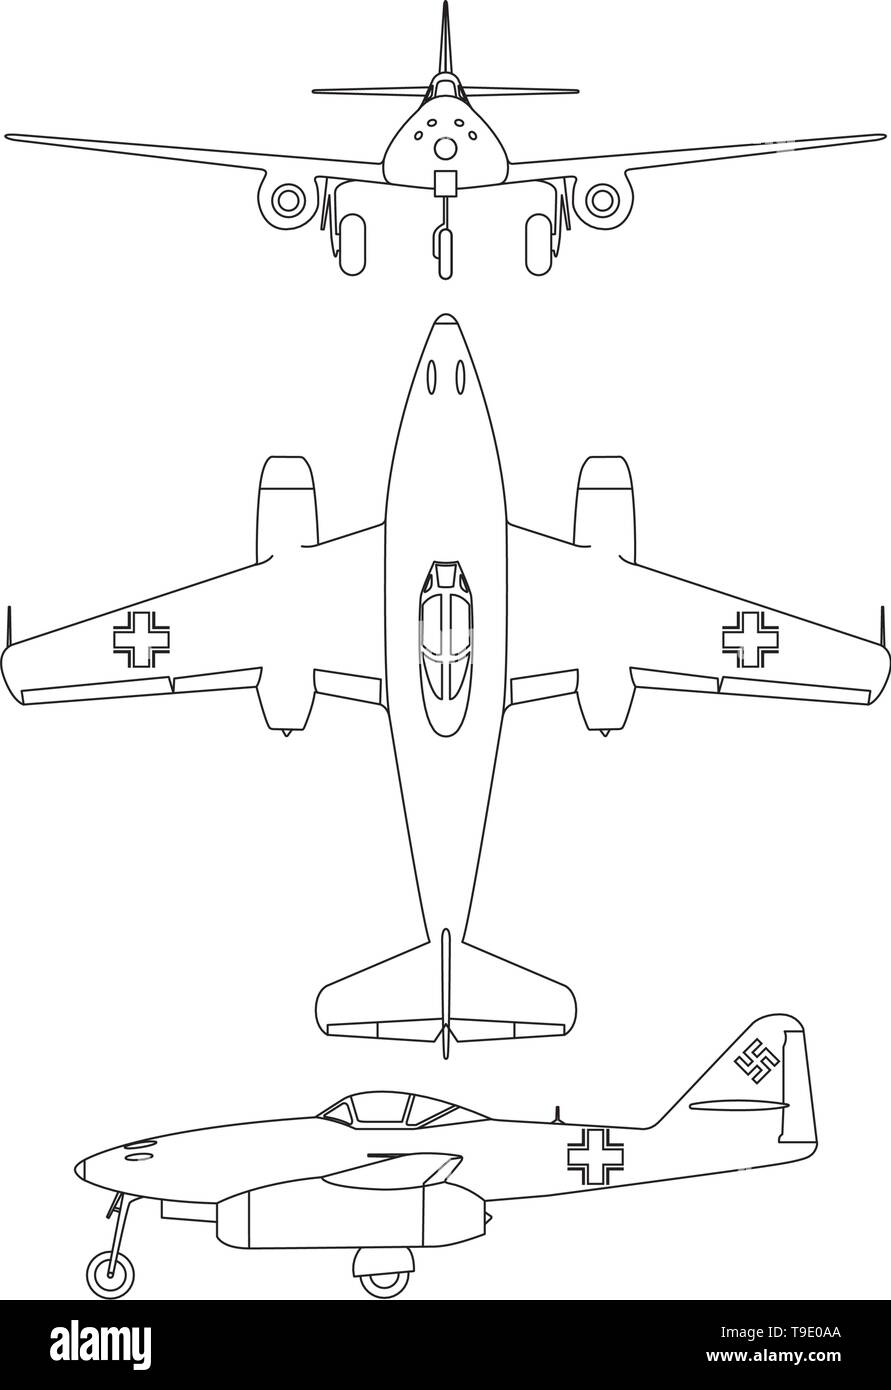 Turbine 2. Weltkrieg Flugzeug blueprint Linie Vektor illustration Stock Vektor